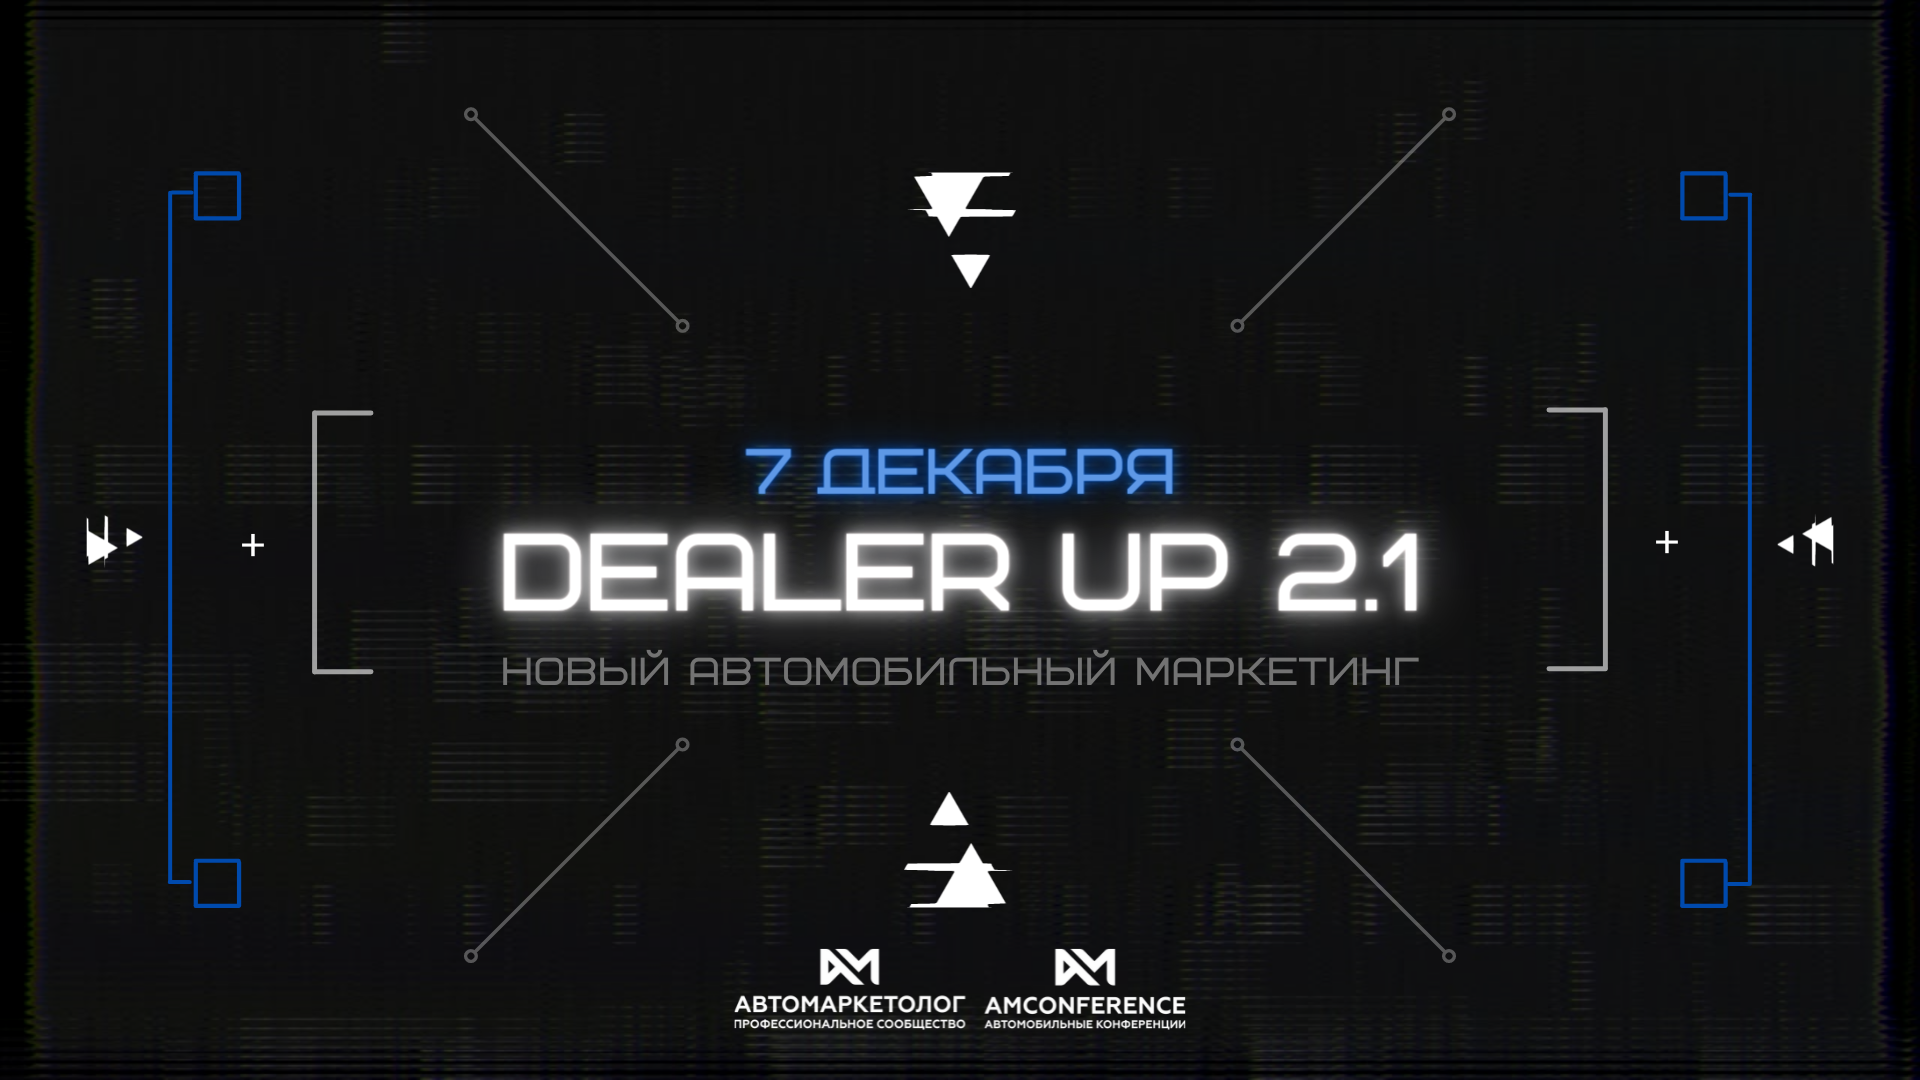 DealerUP 2.1 — новый автомобильный маркетинг